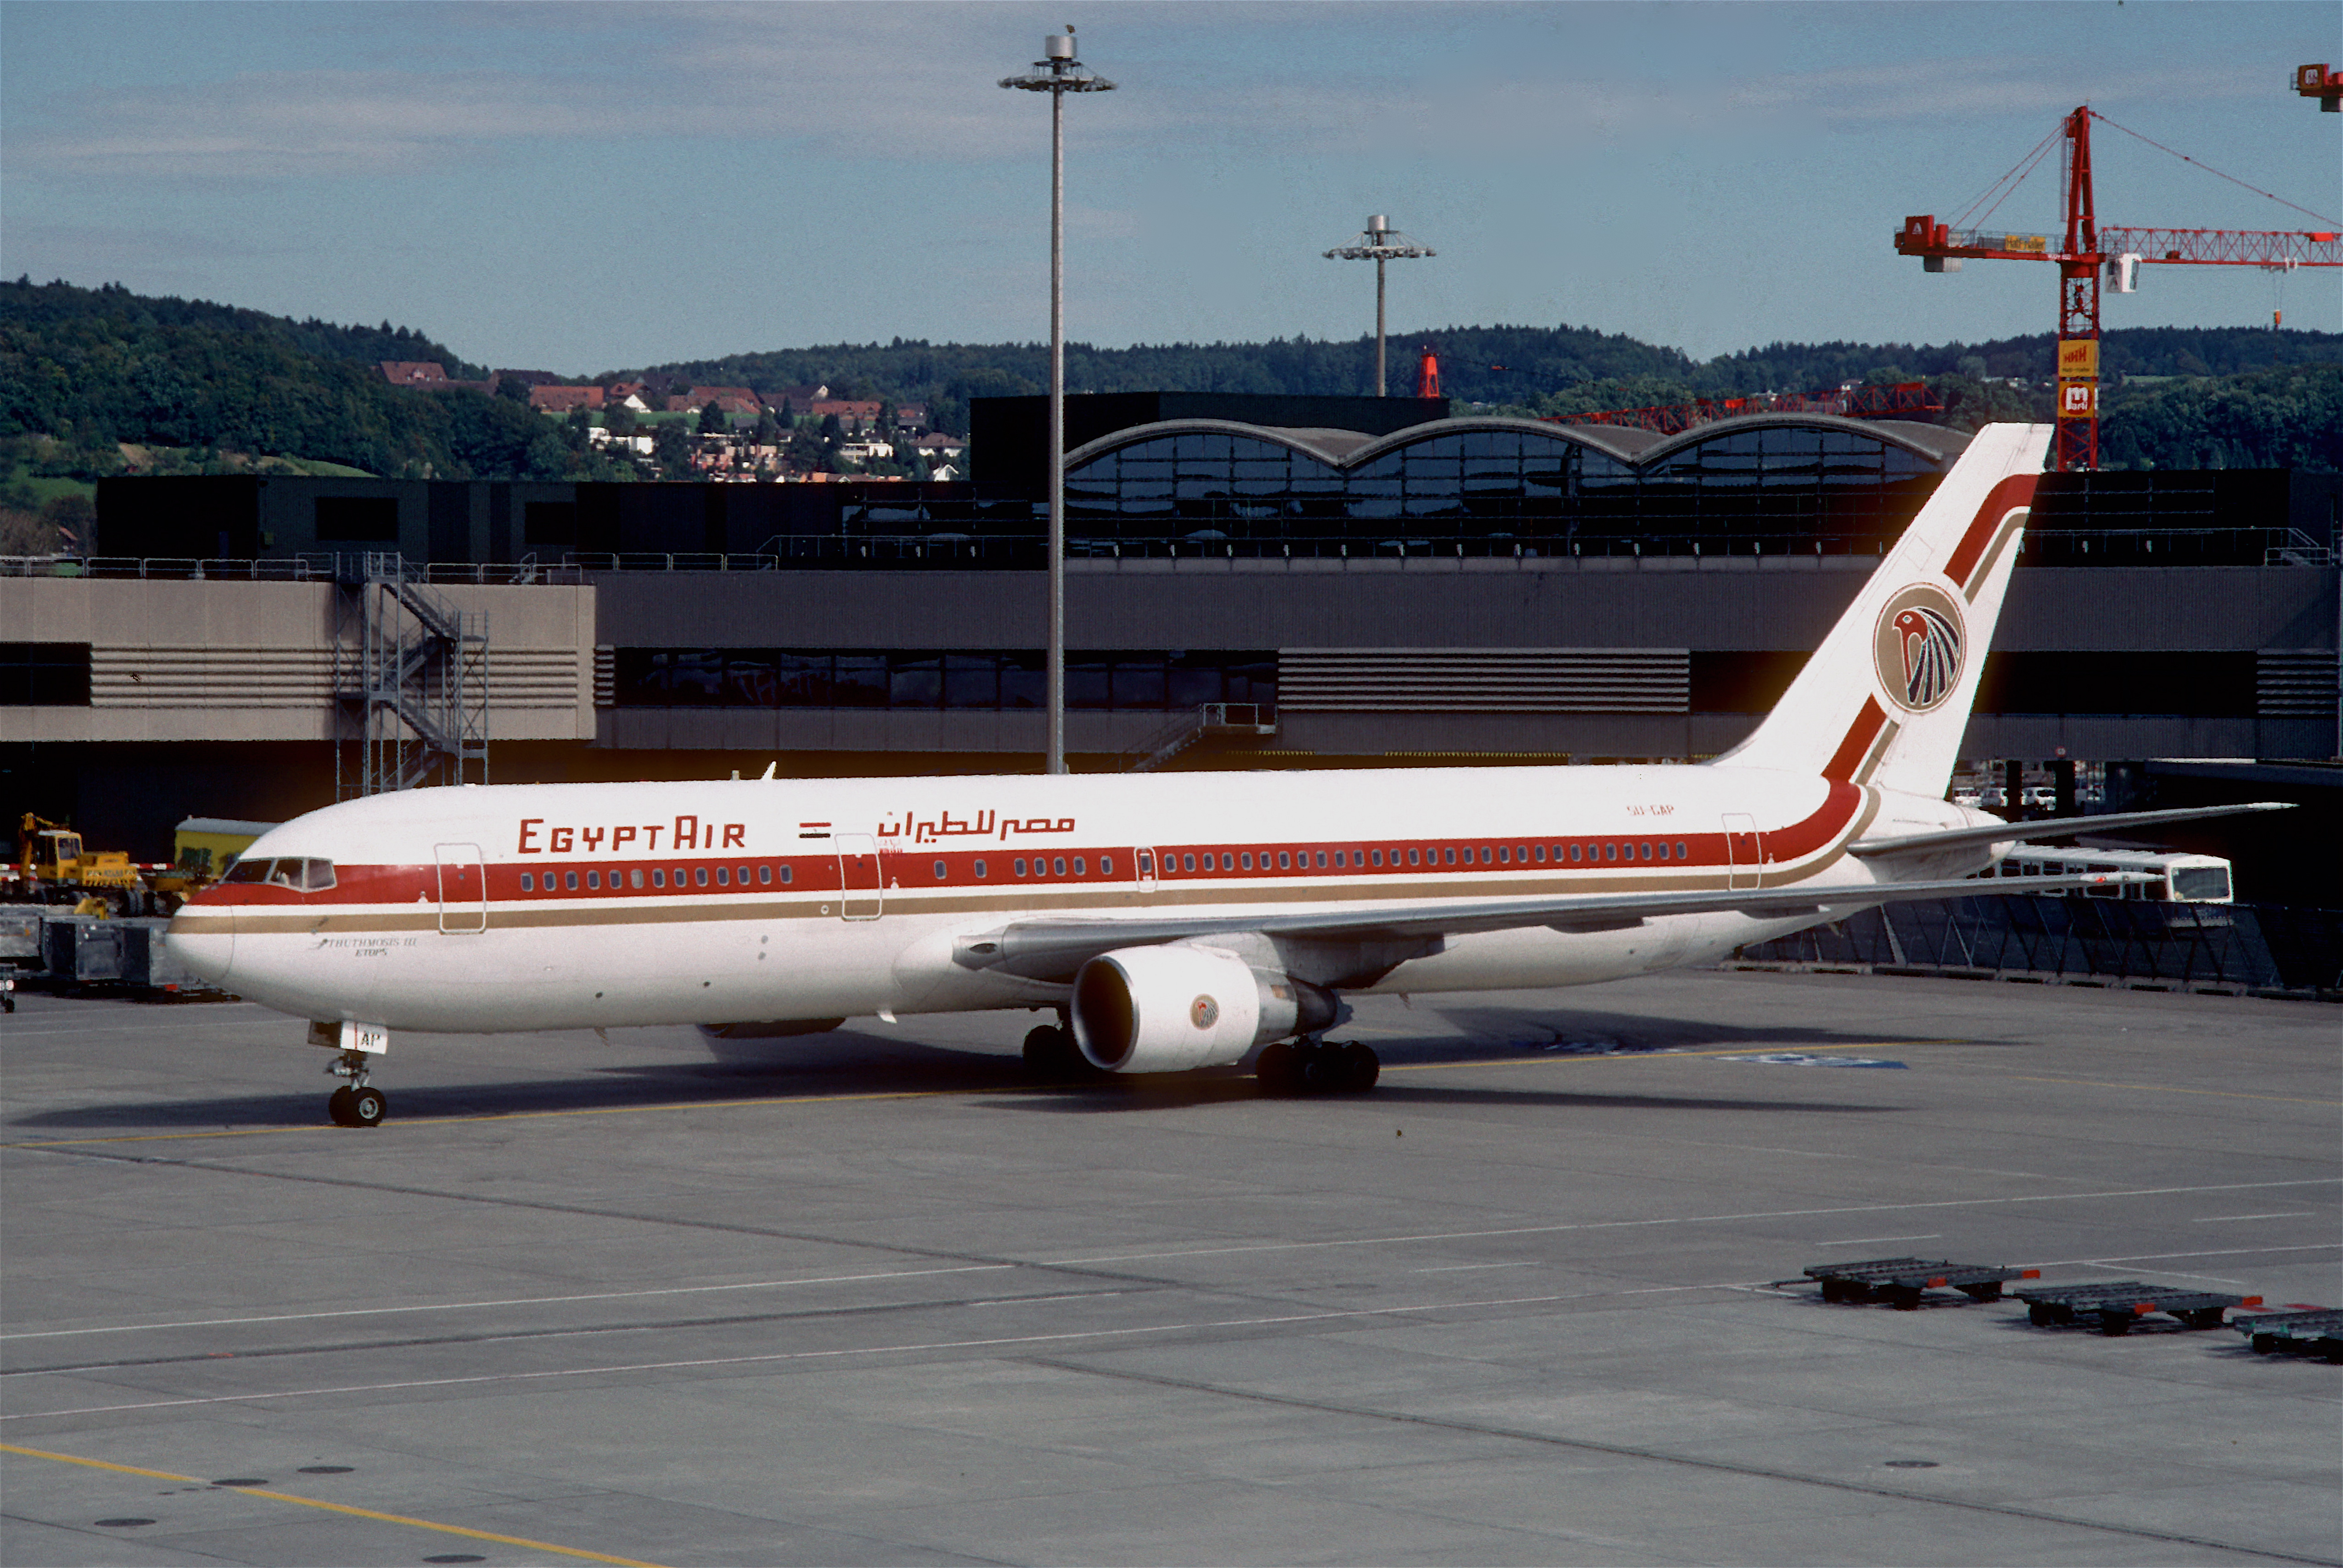 EgyptAir Flight 990 - Wikipedia